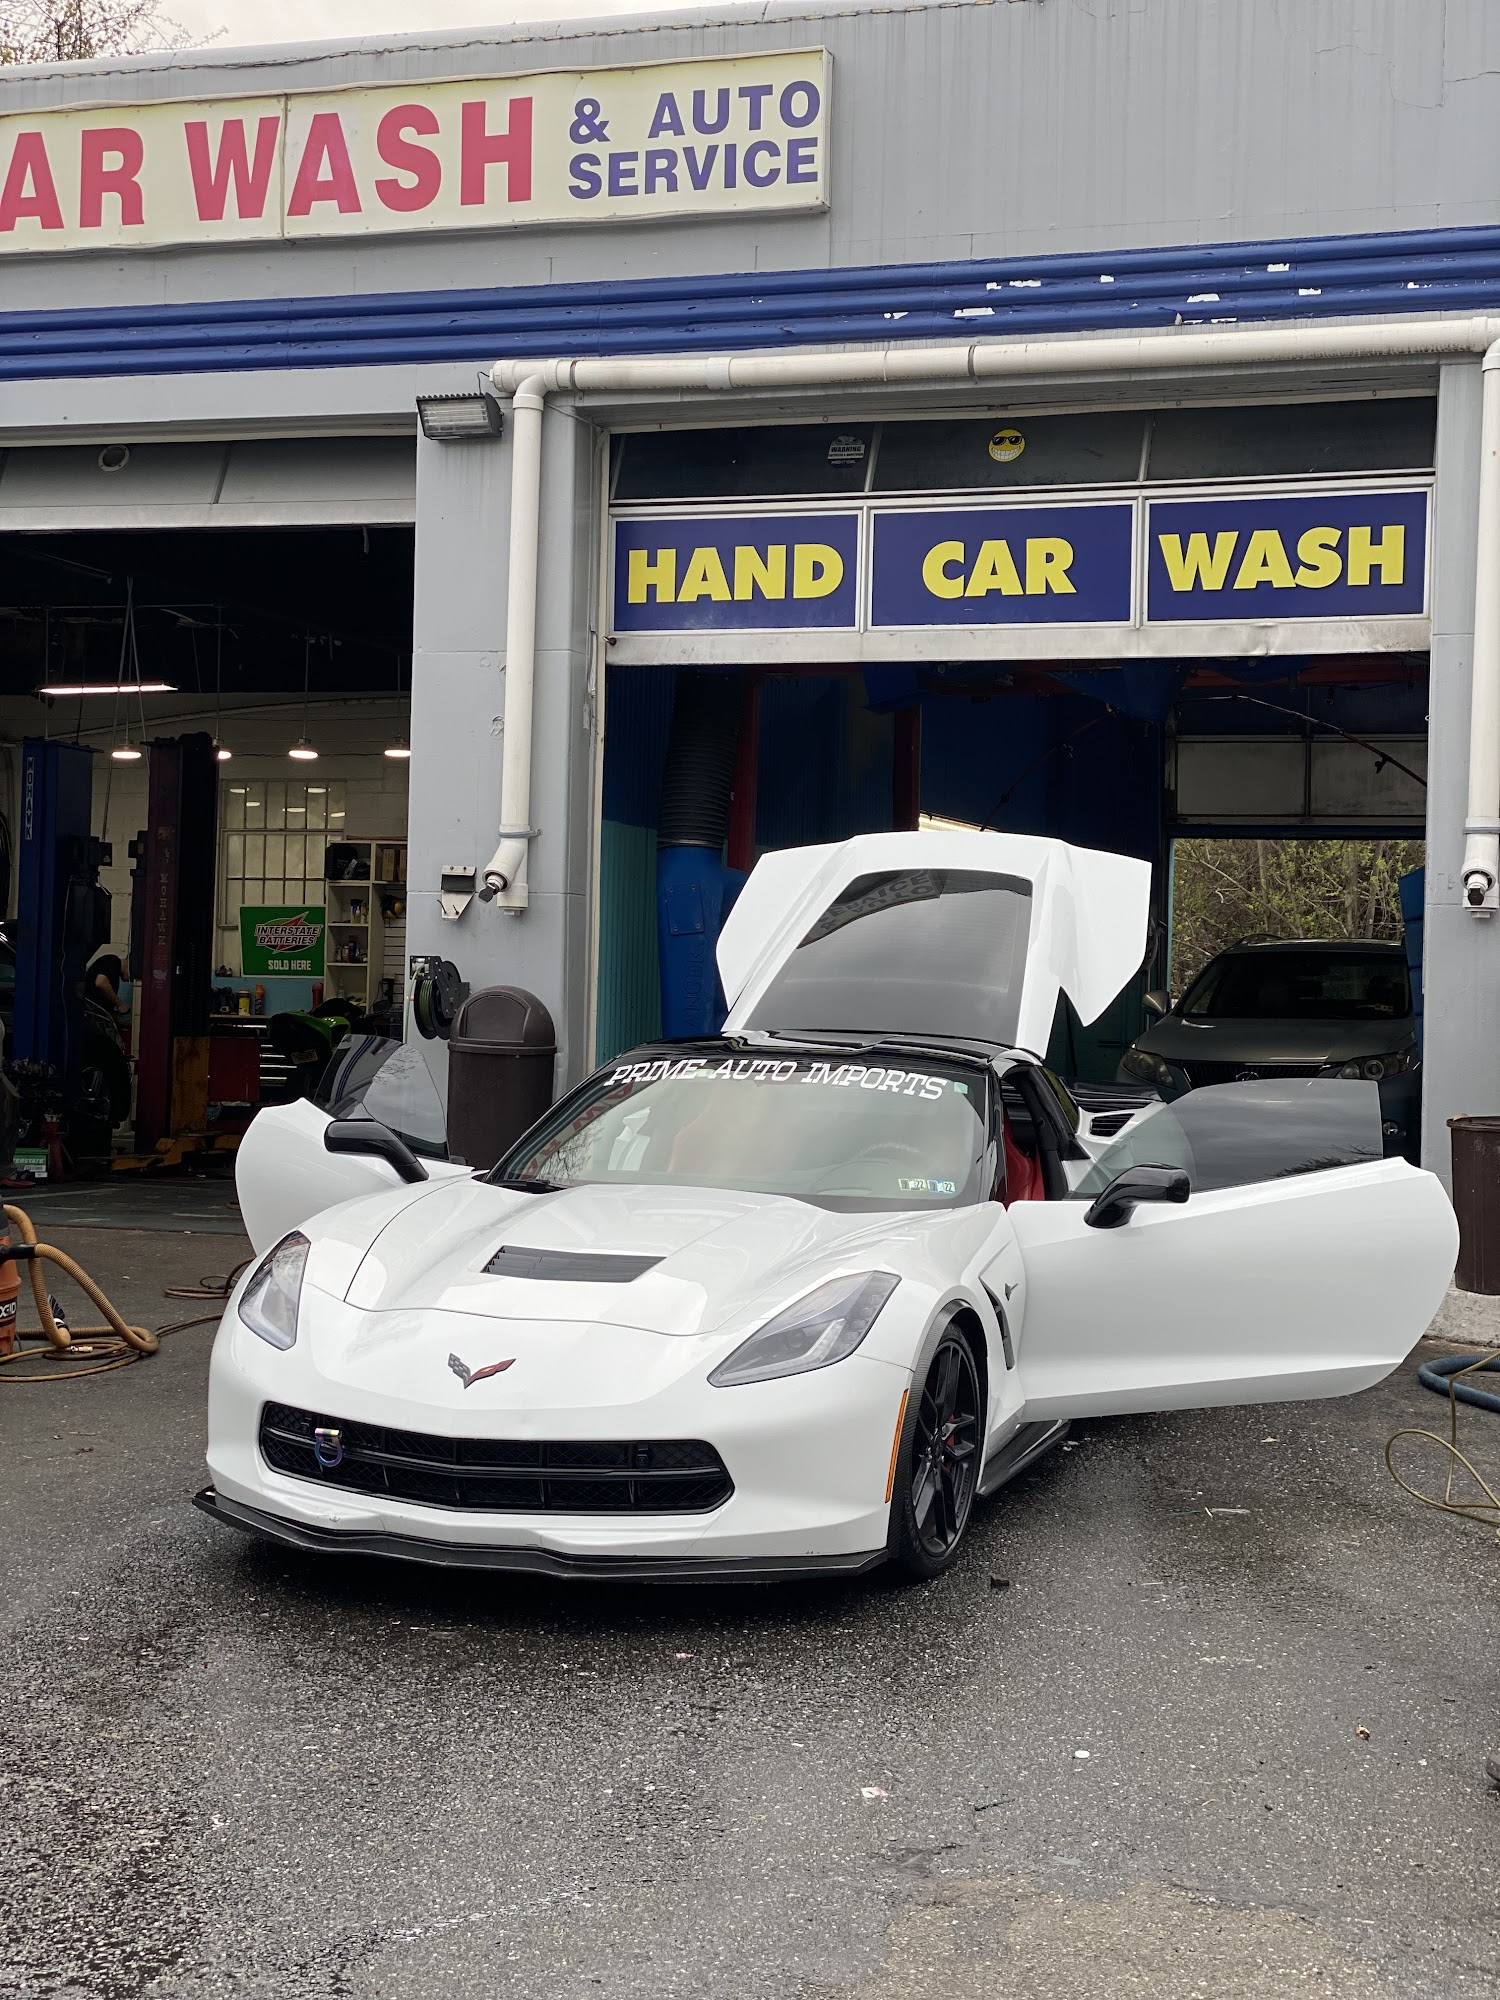 Pompton Plains Hand Car Wash